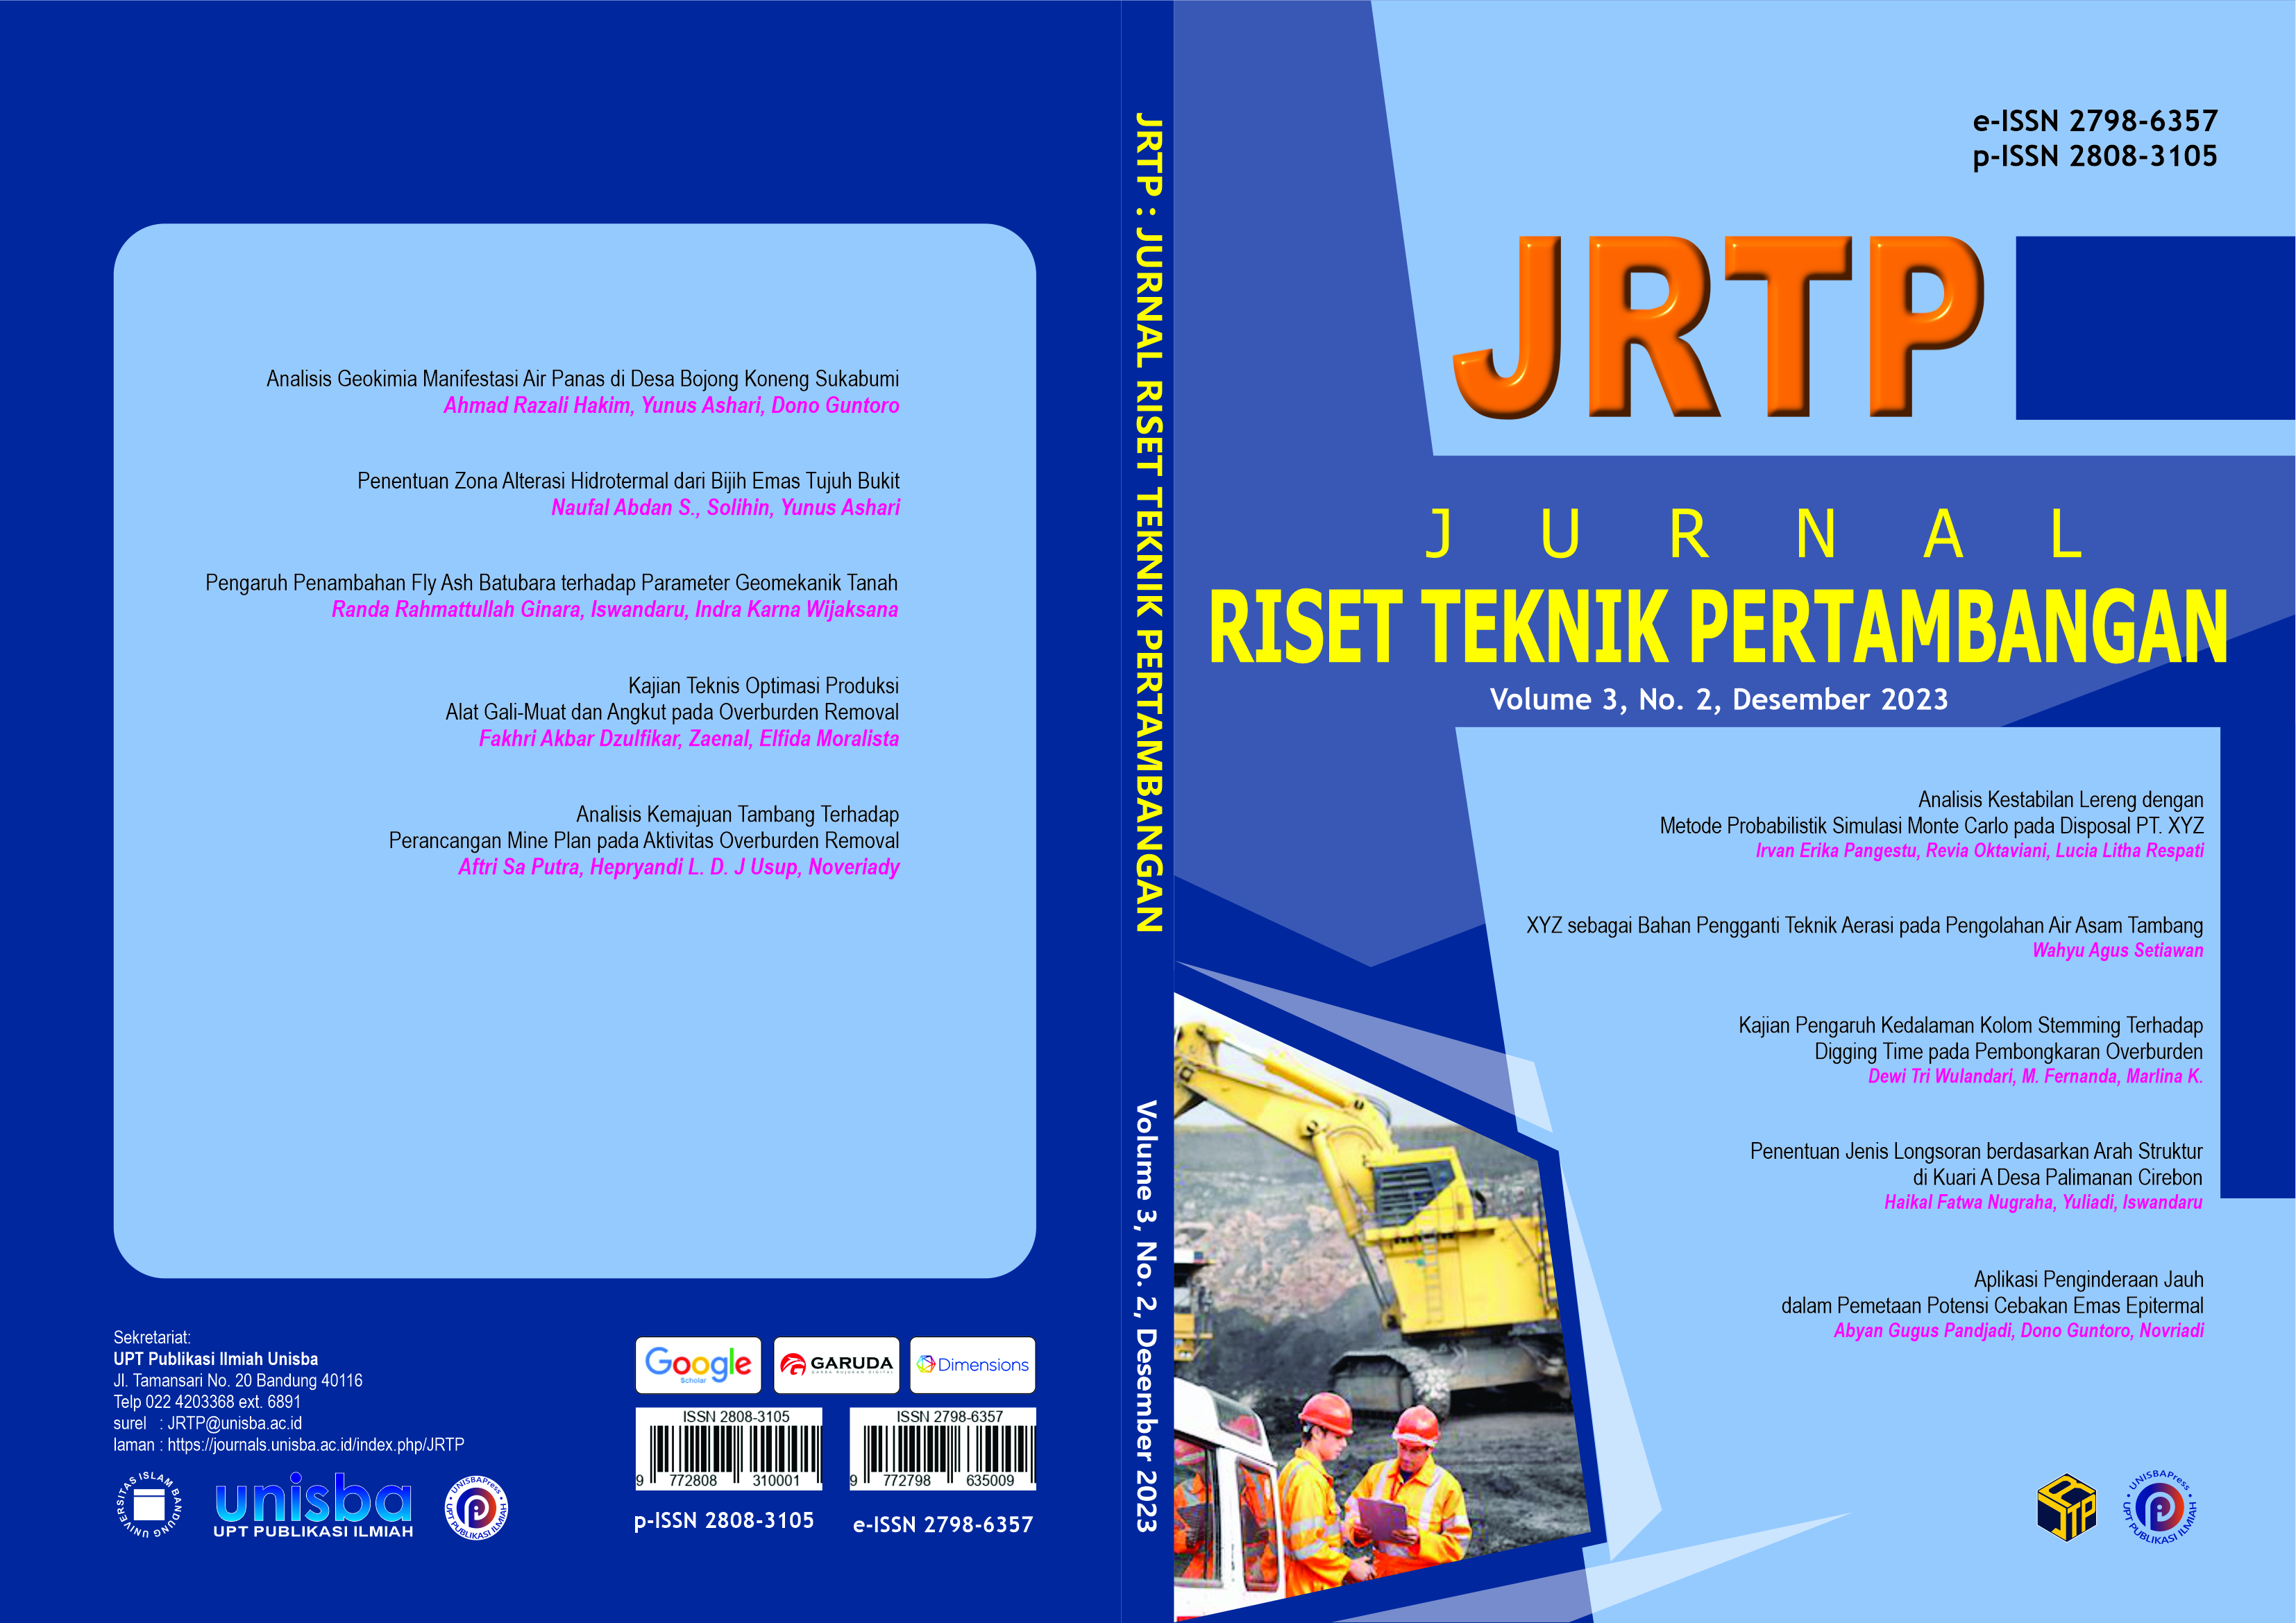 					View Volume 3, No. 2, Desember 2023, Jurnal Riset Teknik Pertambangan (JRTP)
				